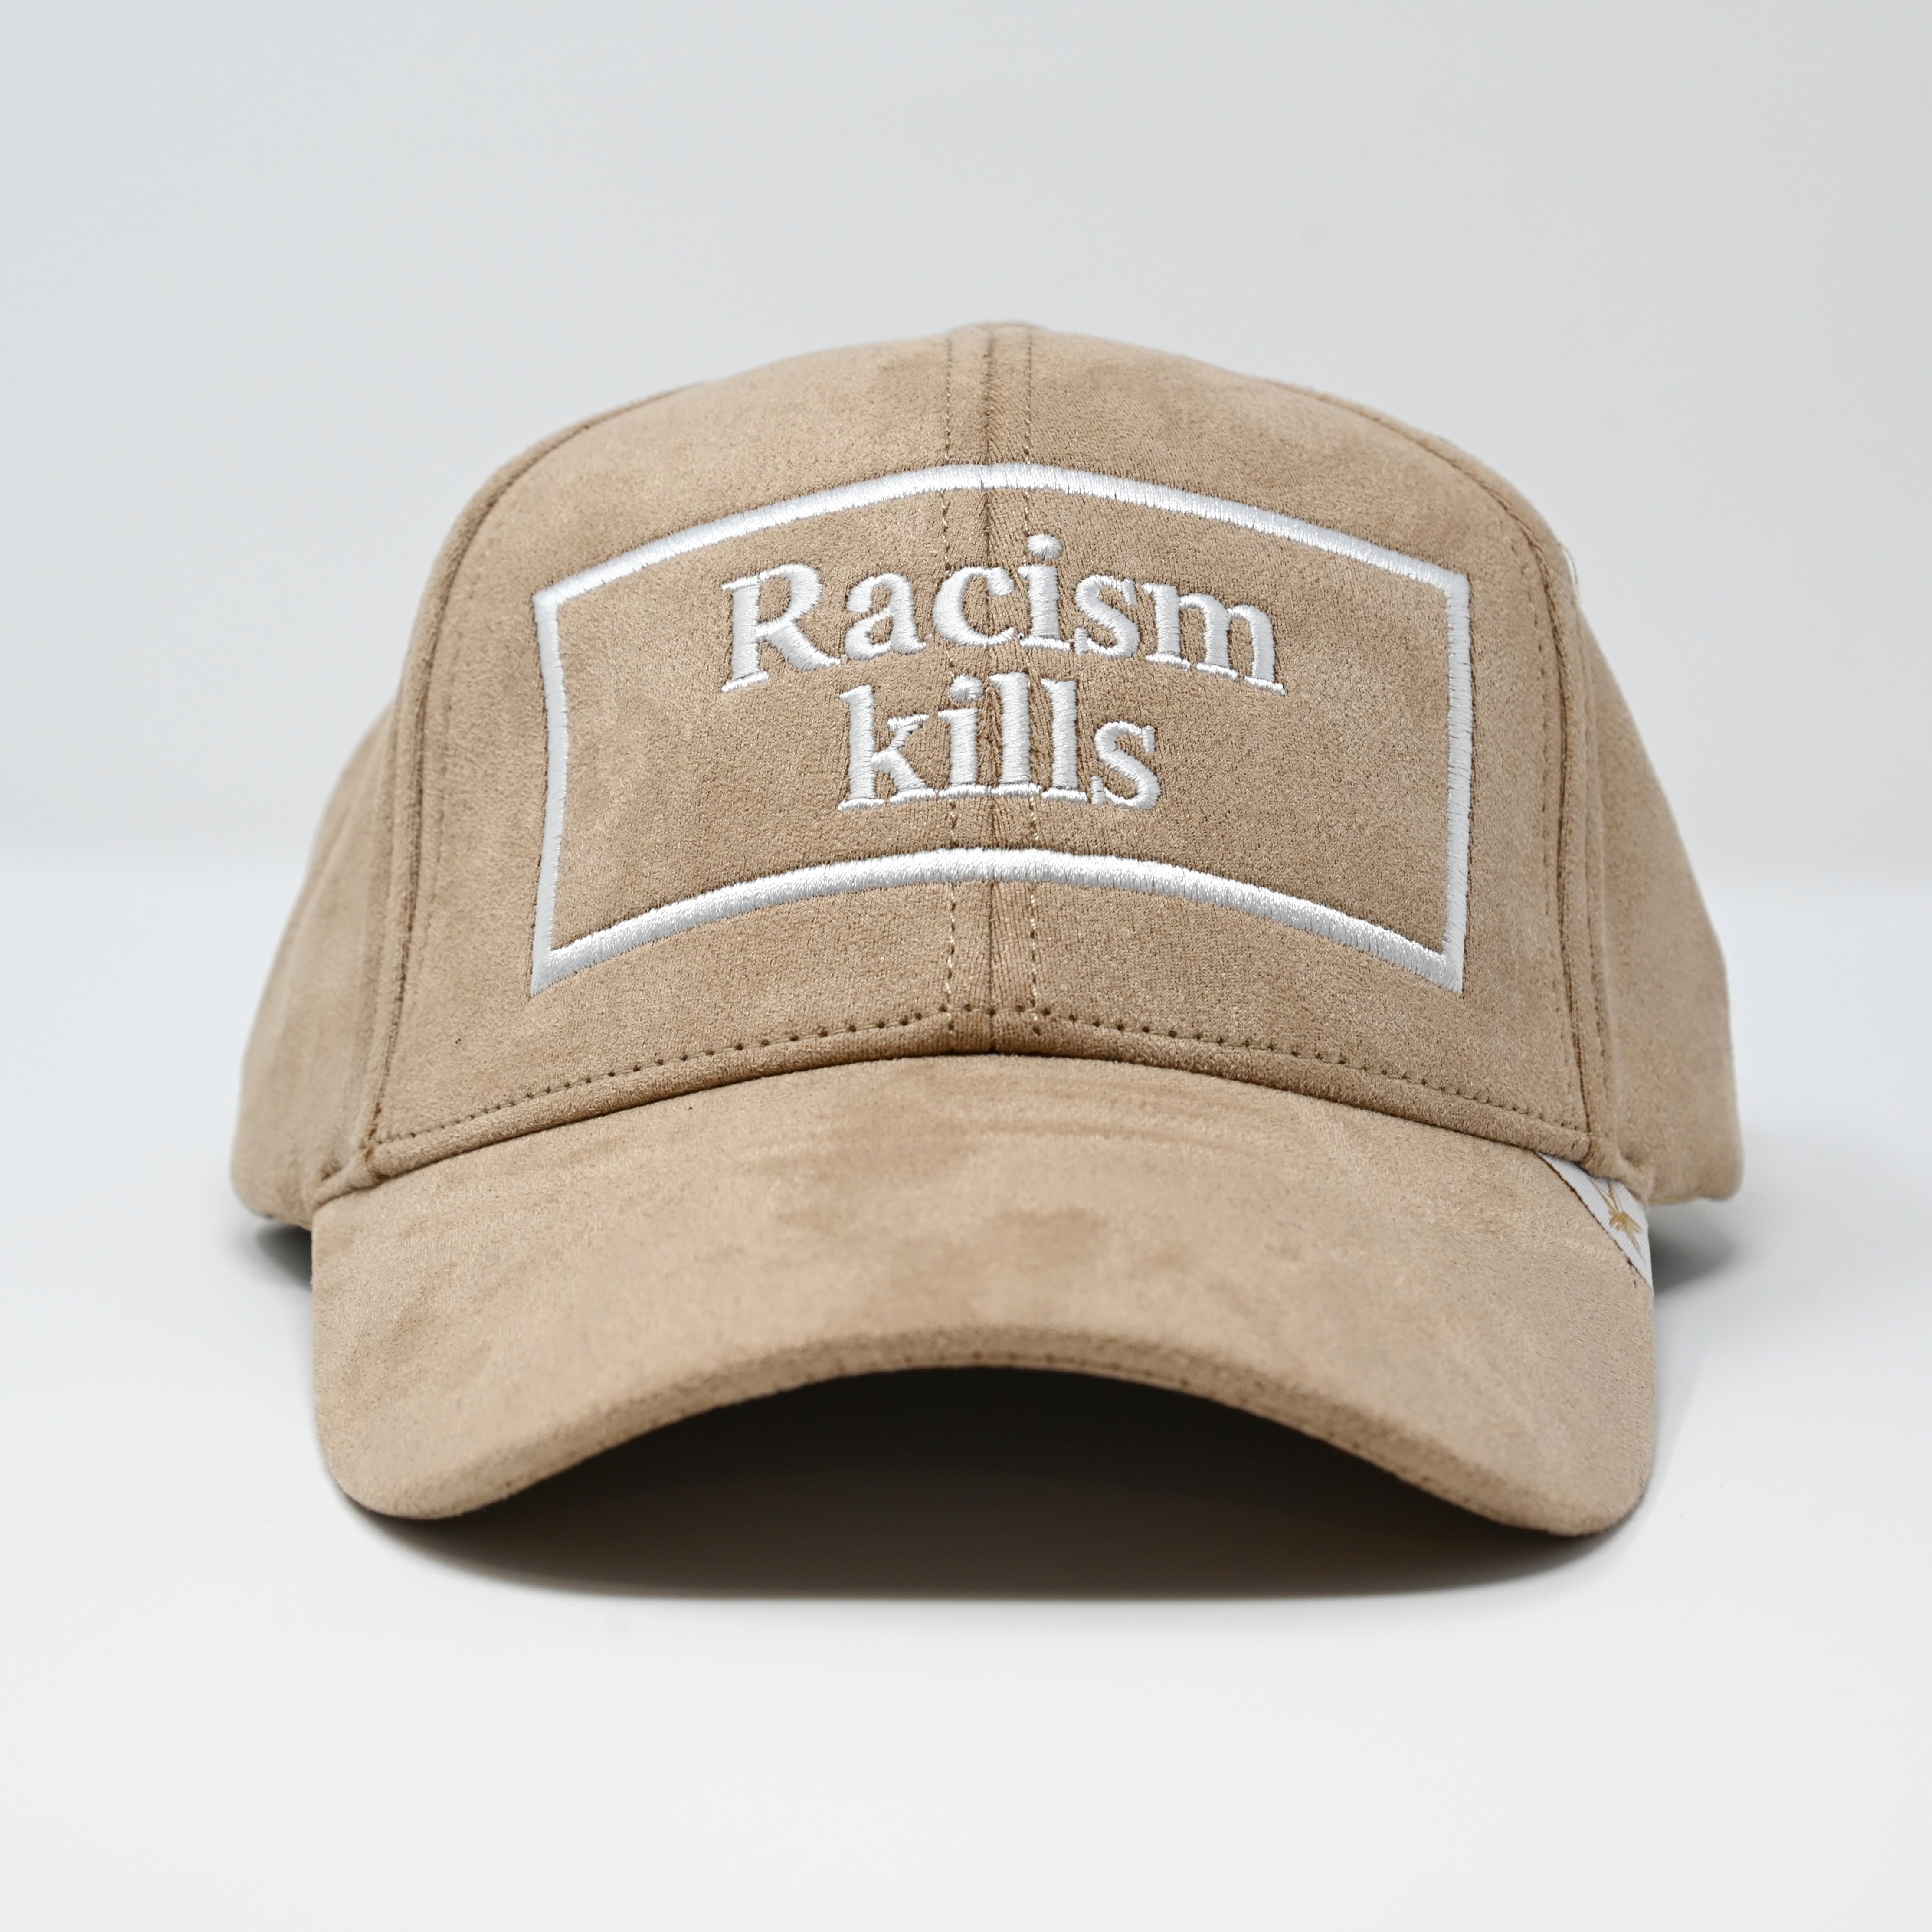 GOLD STAR-RACISM KILLS TRUCKER HAT